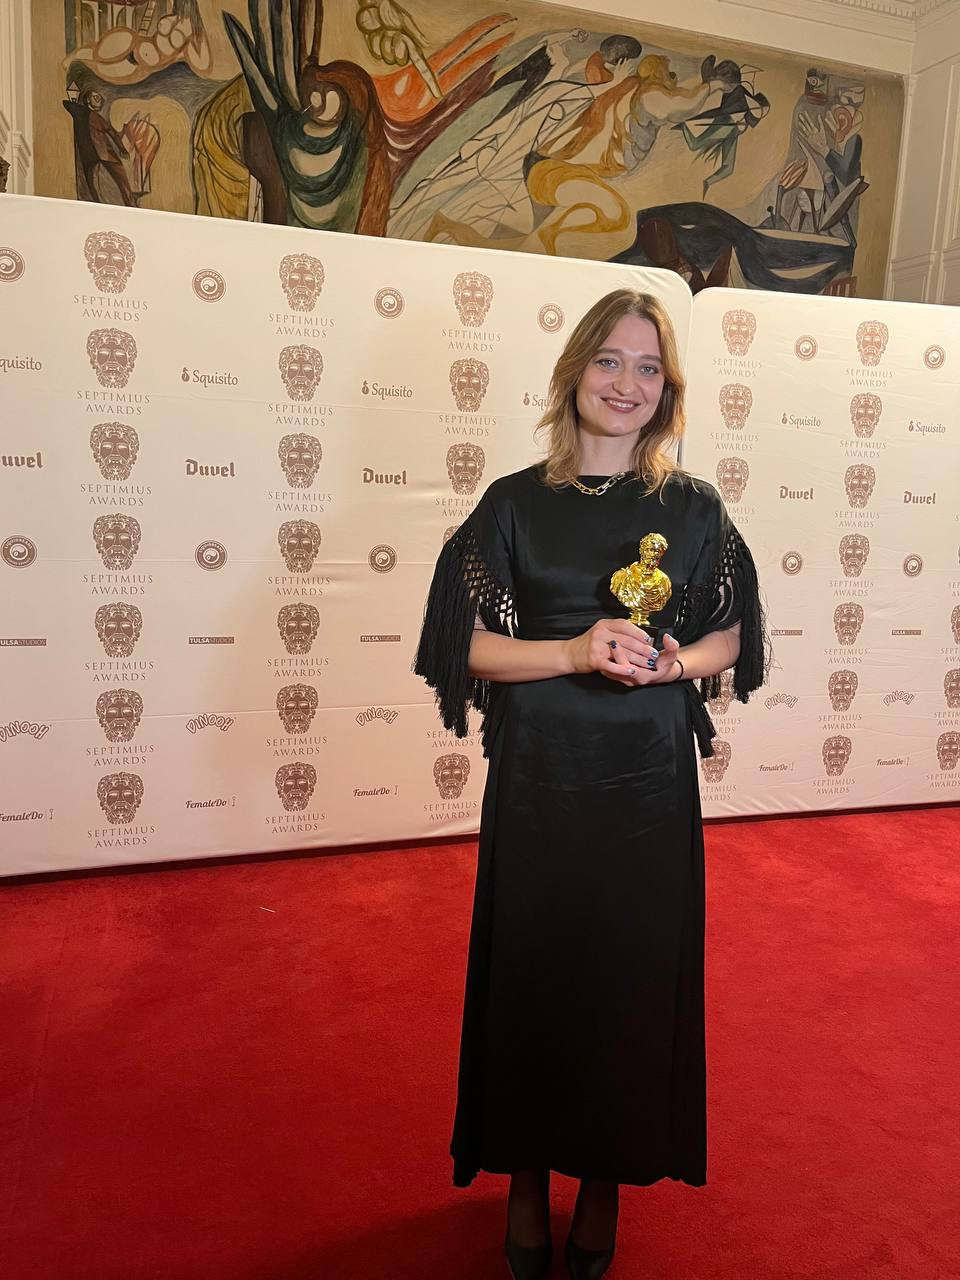 Рита Бурковская и фильм Видение бабочки получили почетную награду.